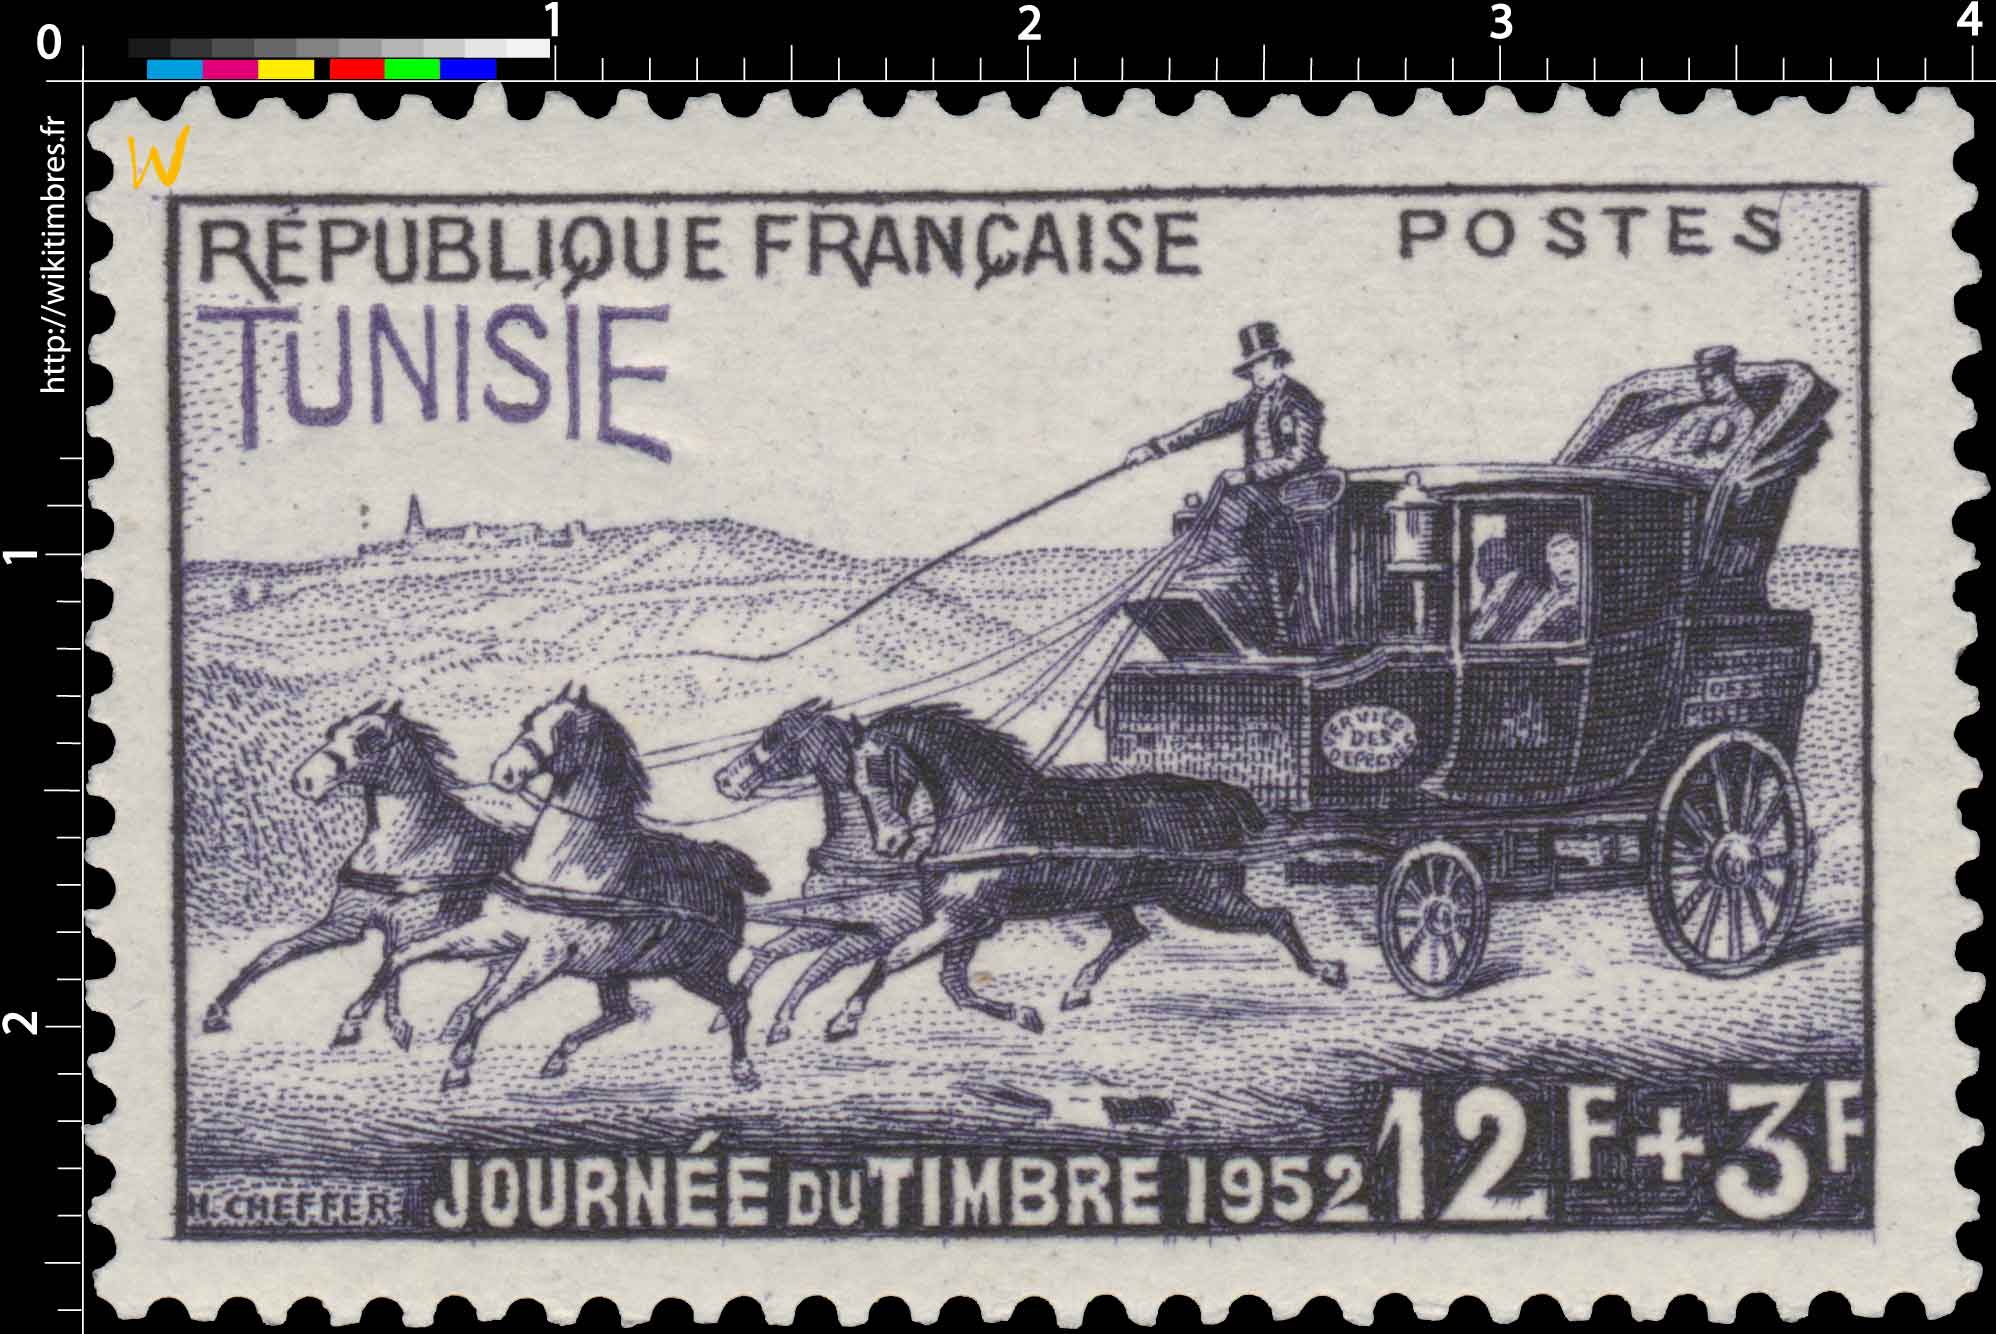 Tunisie - Journée du timbre 1952. Malle-poste